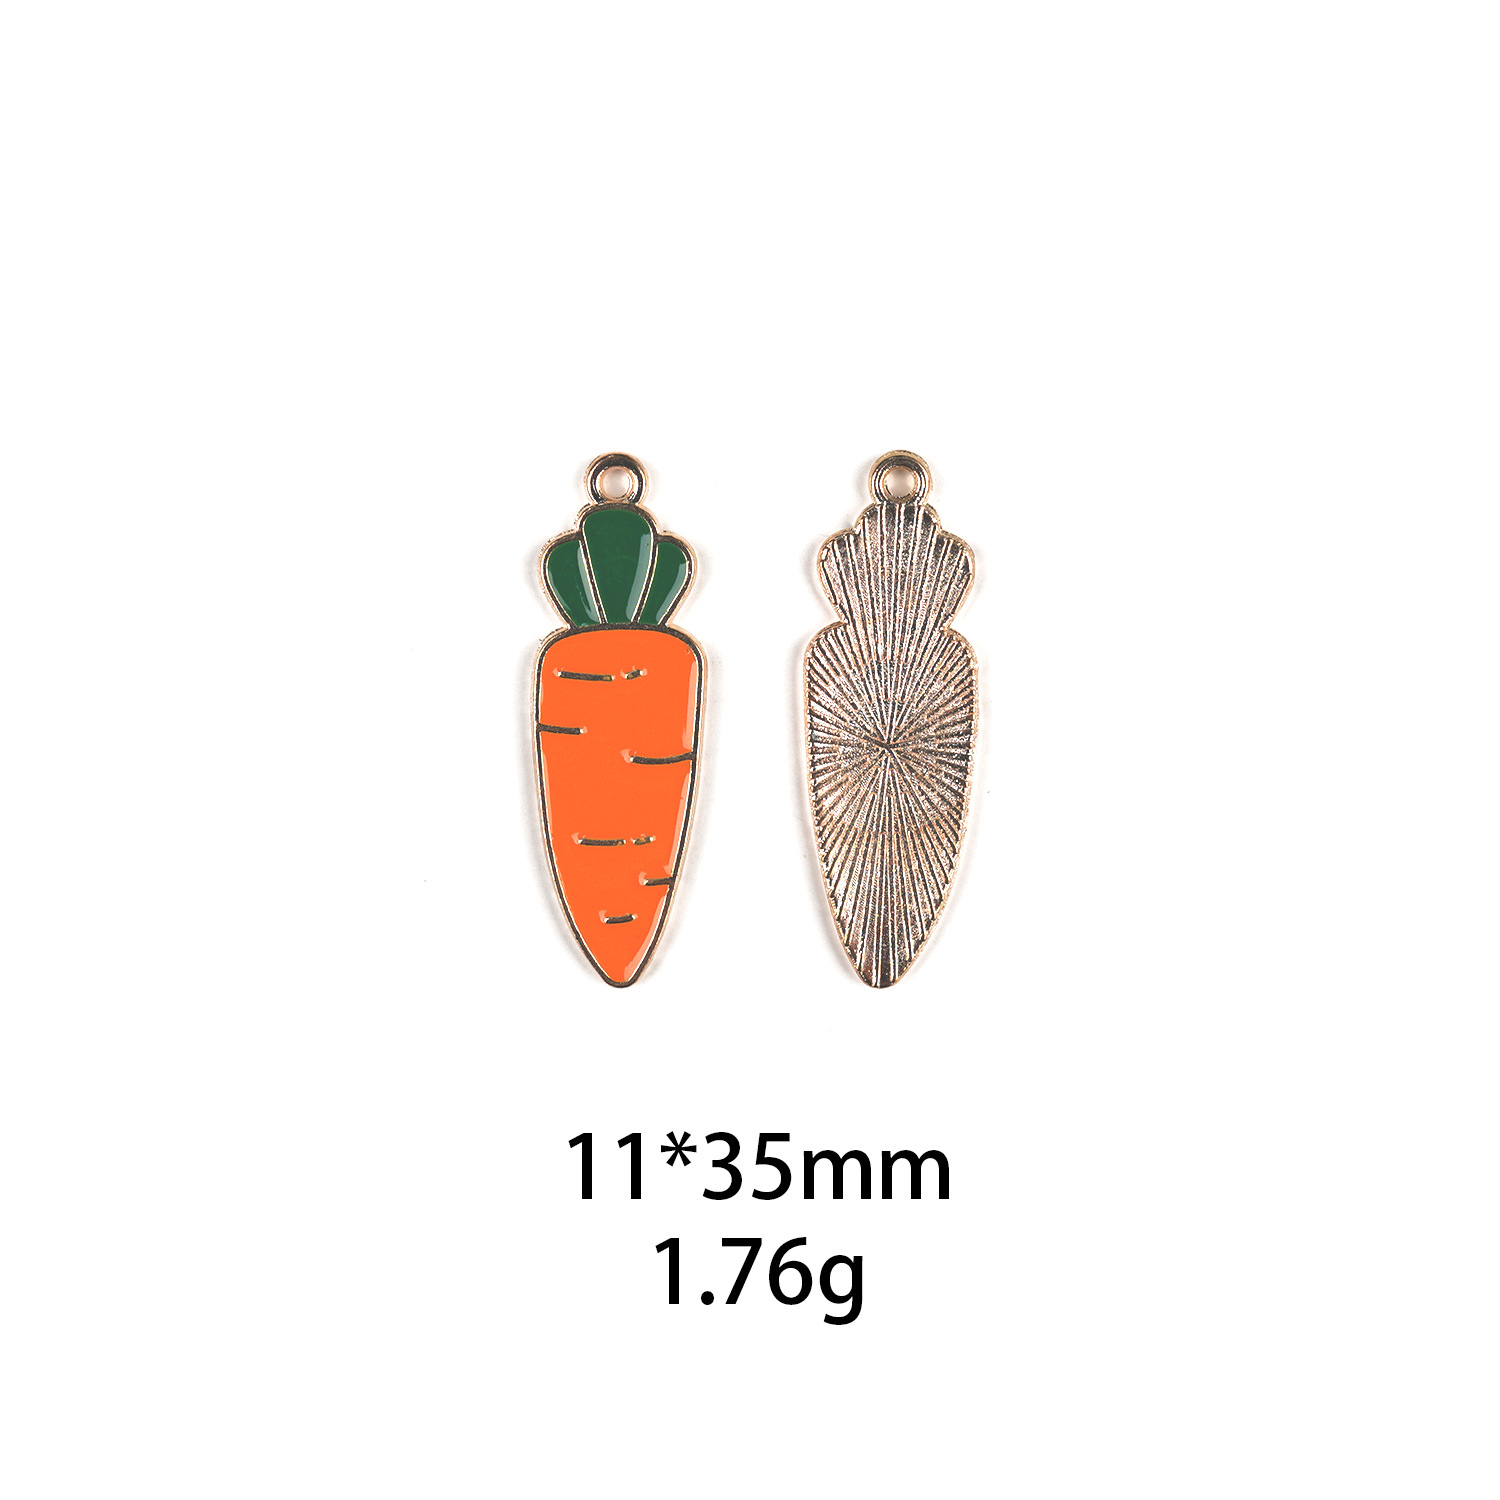 2:carrot